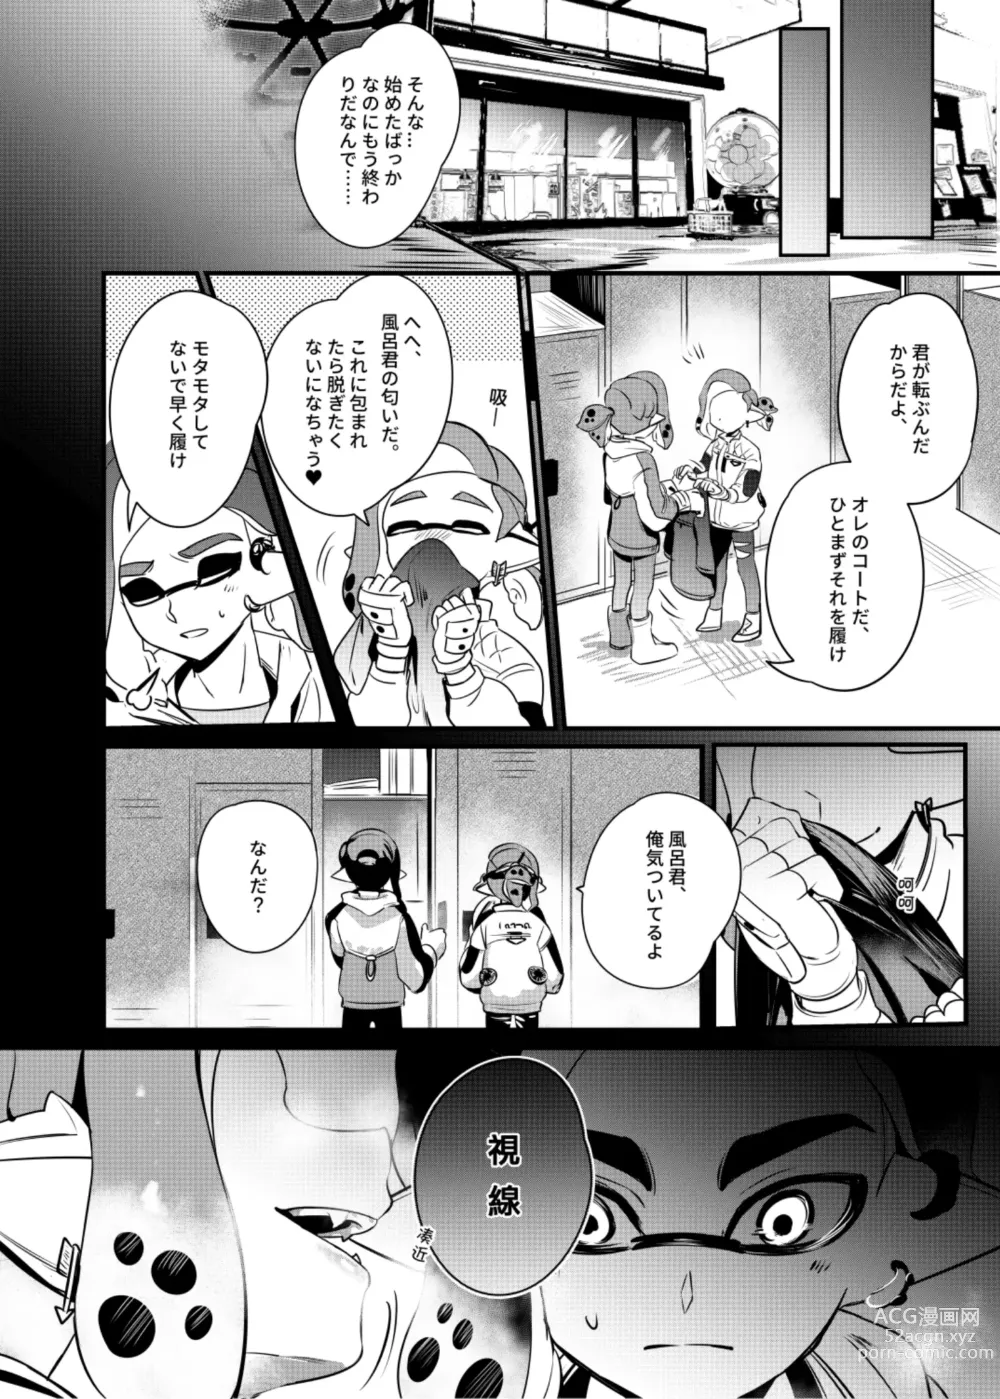 Page 9 of doujinshi Konna Boro Zubon Hayatte Imasu?